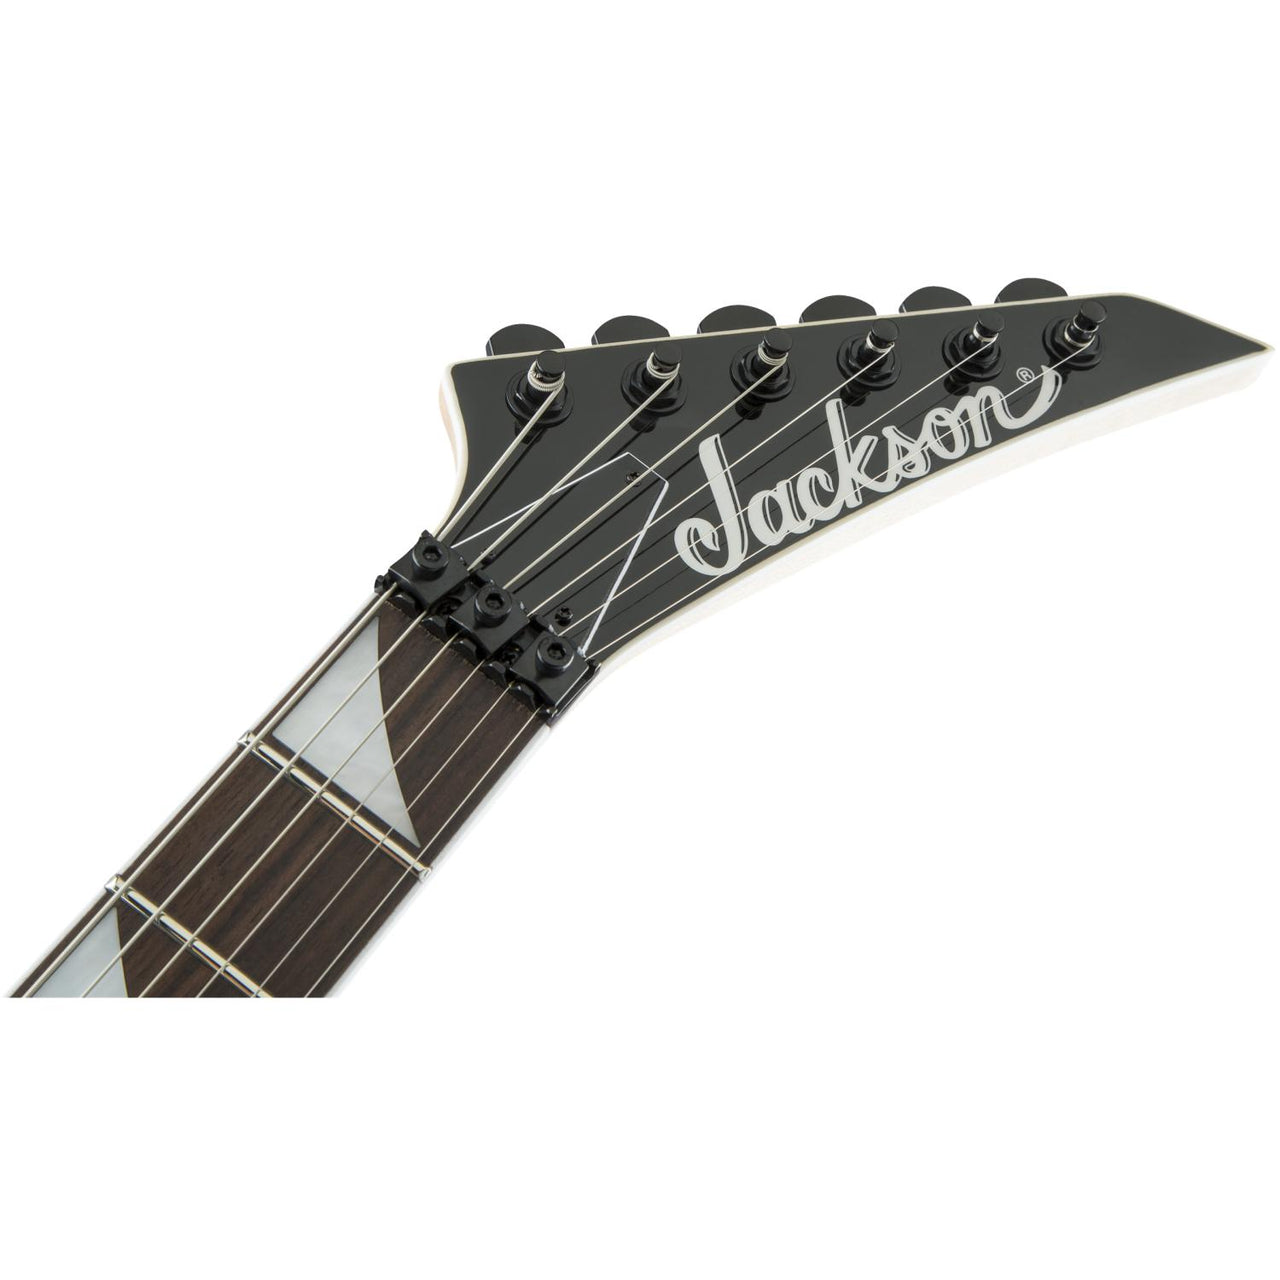 Guitarra Electrica Jackson Js32 Dka, Ah Fb-bbl, 2910148522